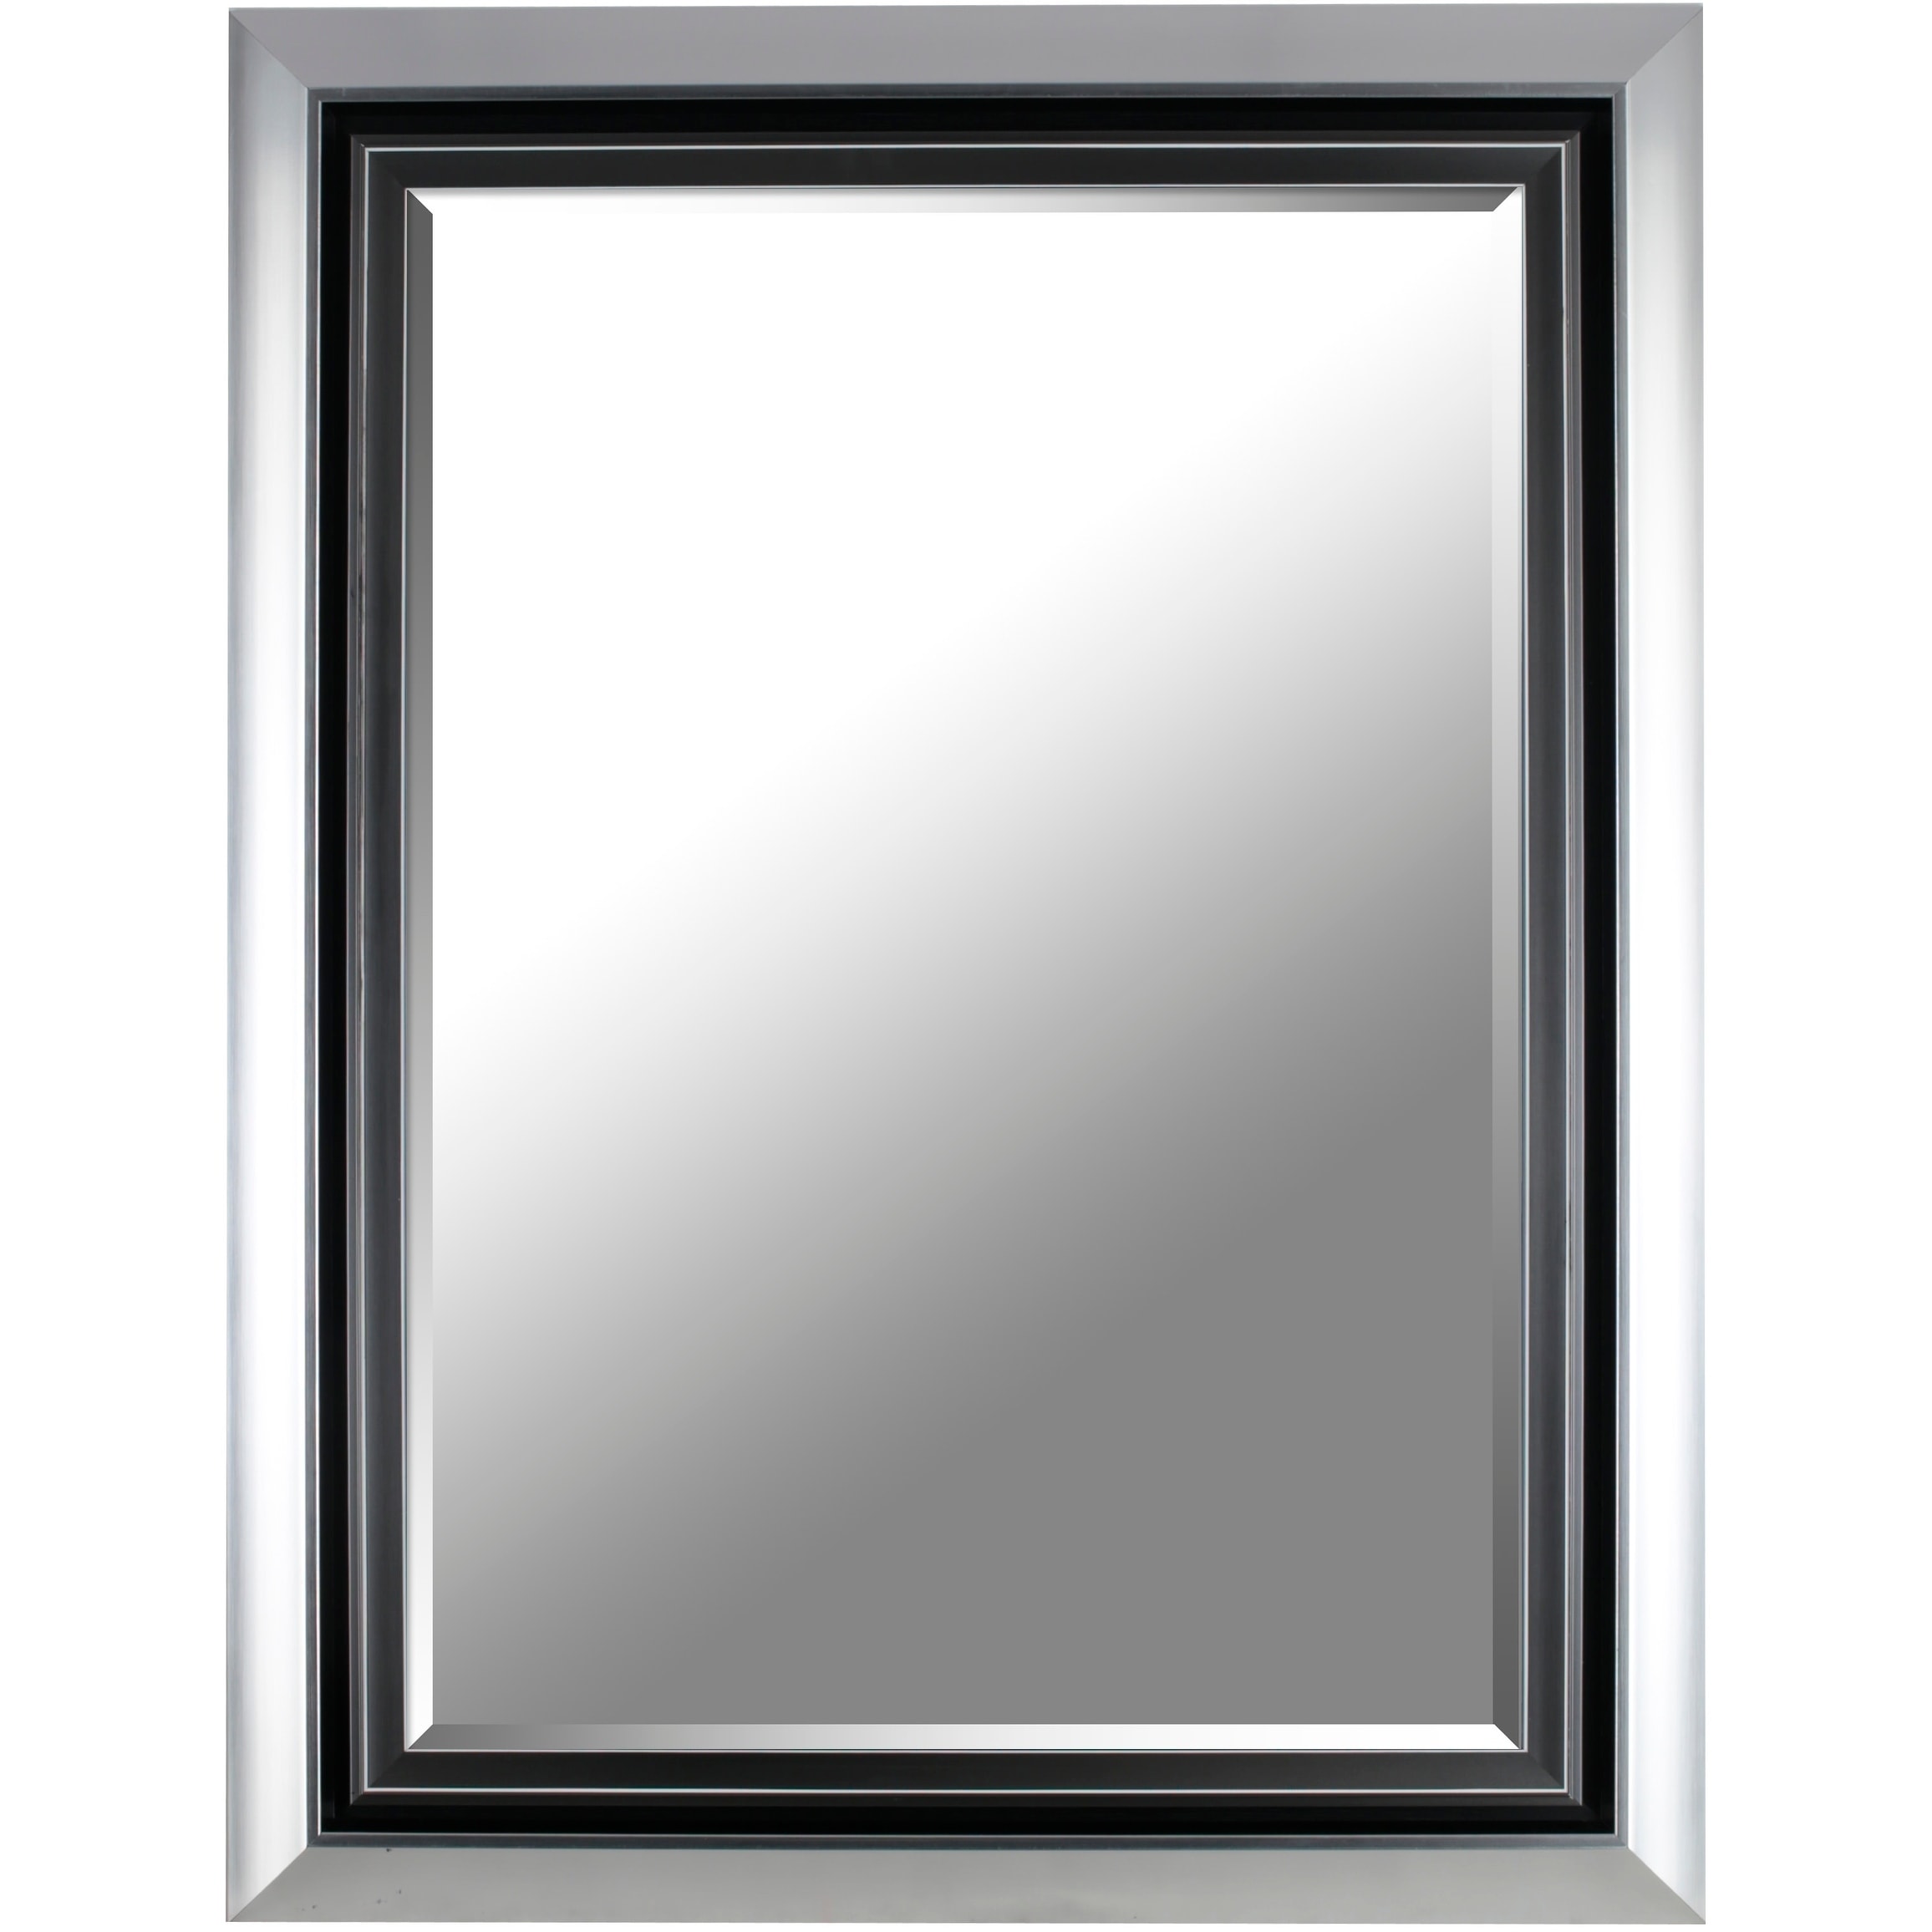 26 37x34 37 Fancy Decorative Wall Mirror By Mirrorize Canada Silver 26 37x34 37x2